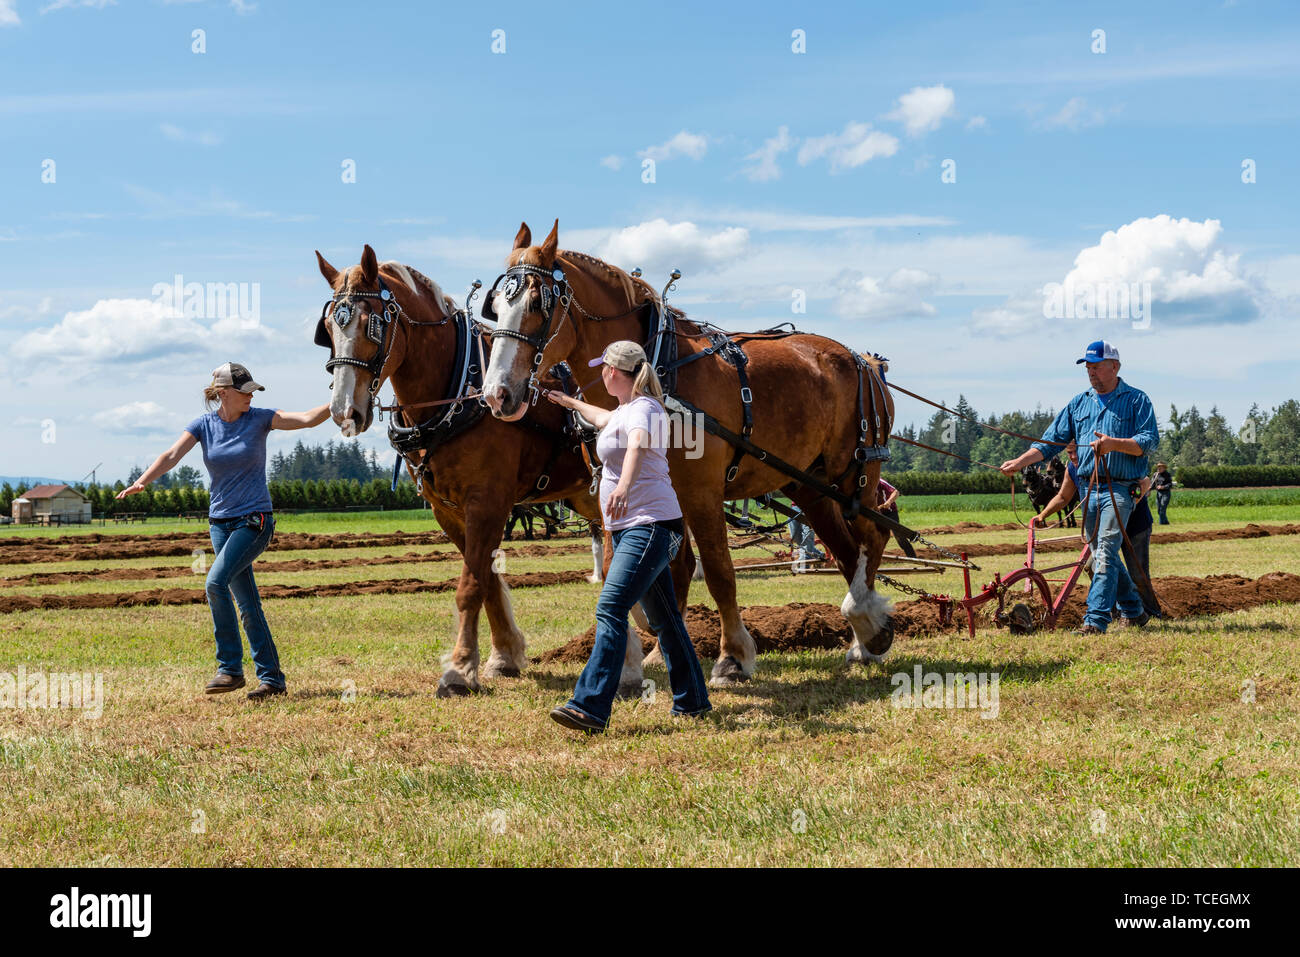 Los equipos del caballo arando un surco. 2019 International de arada. Berthusen, Lynden Park, Washington Foto de stock